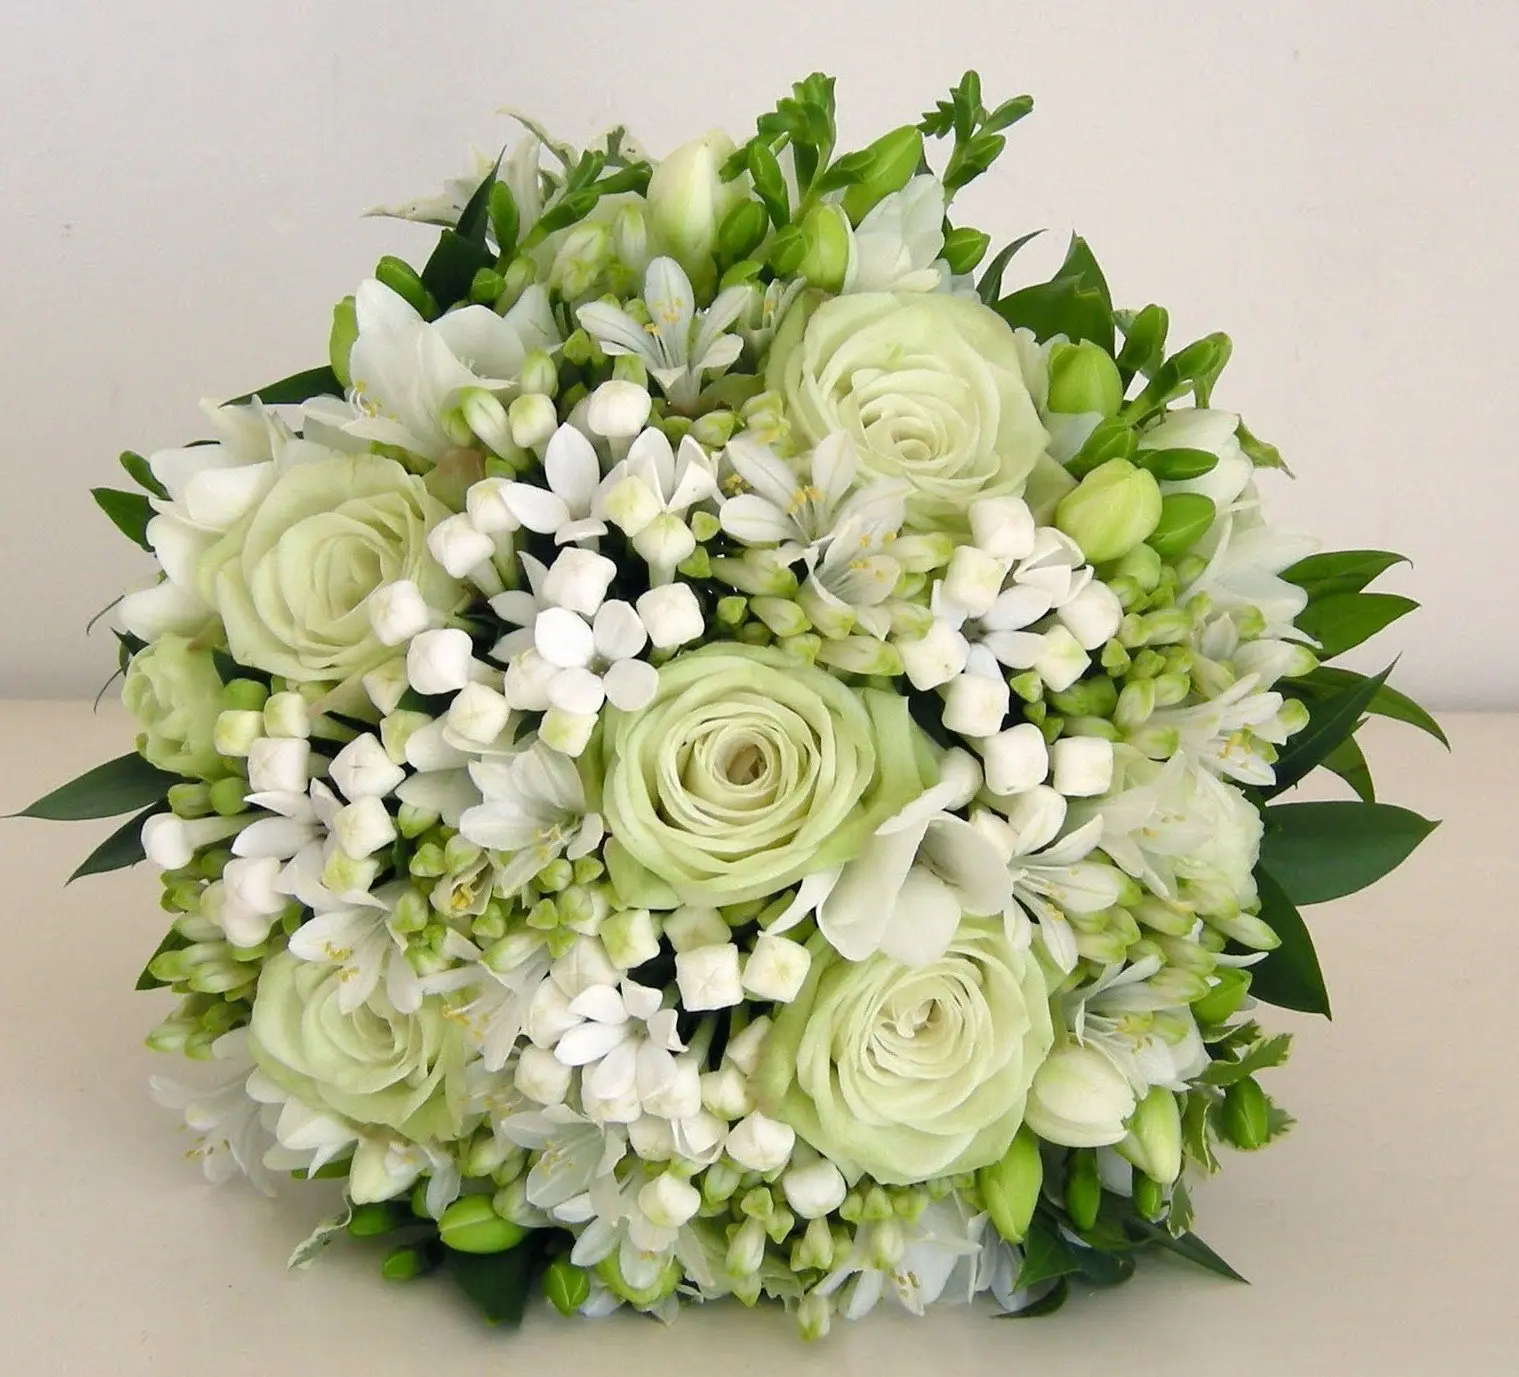 il bouquet sposa variazioni sul bianco e verde - Daniele Panareo fotografo di matrimoni a Lecce e provincia